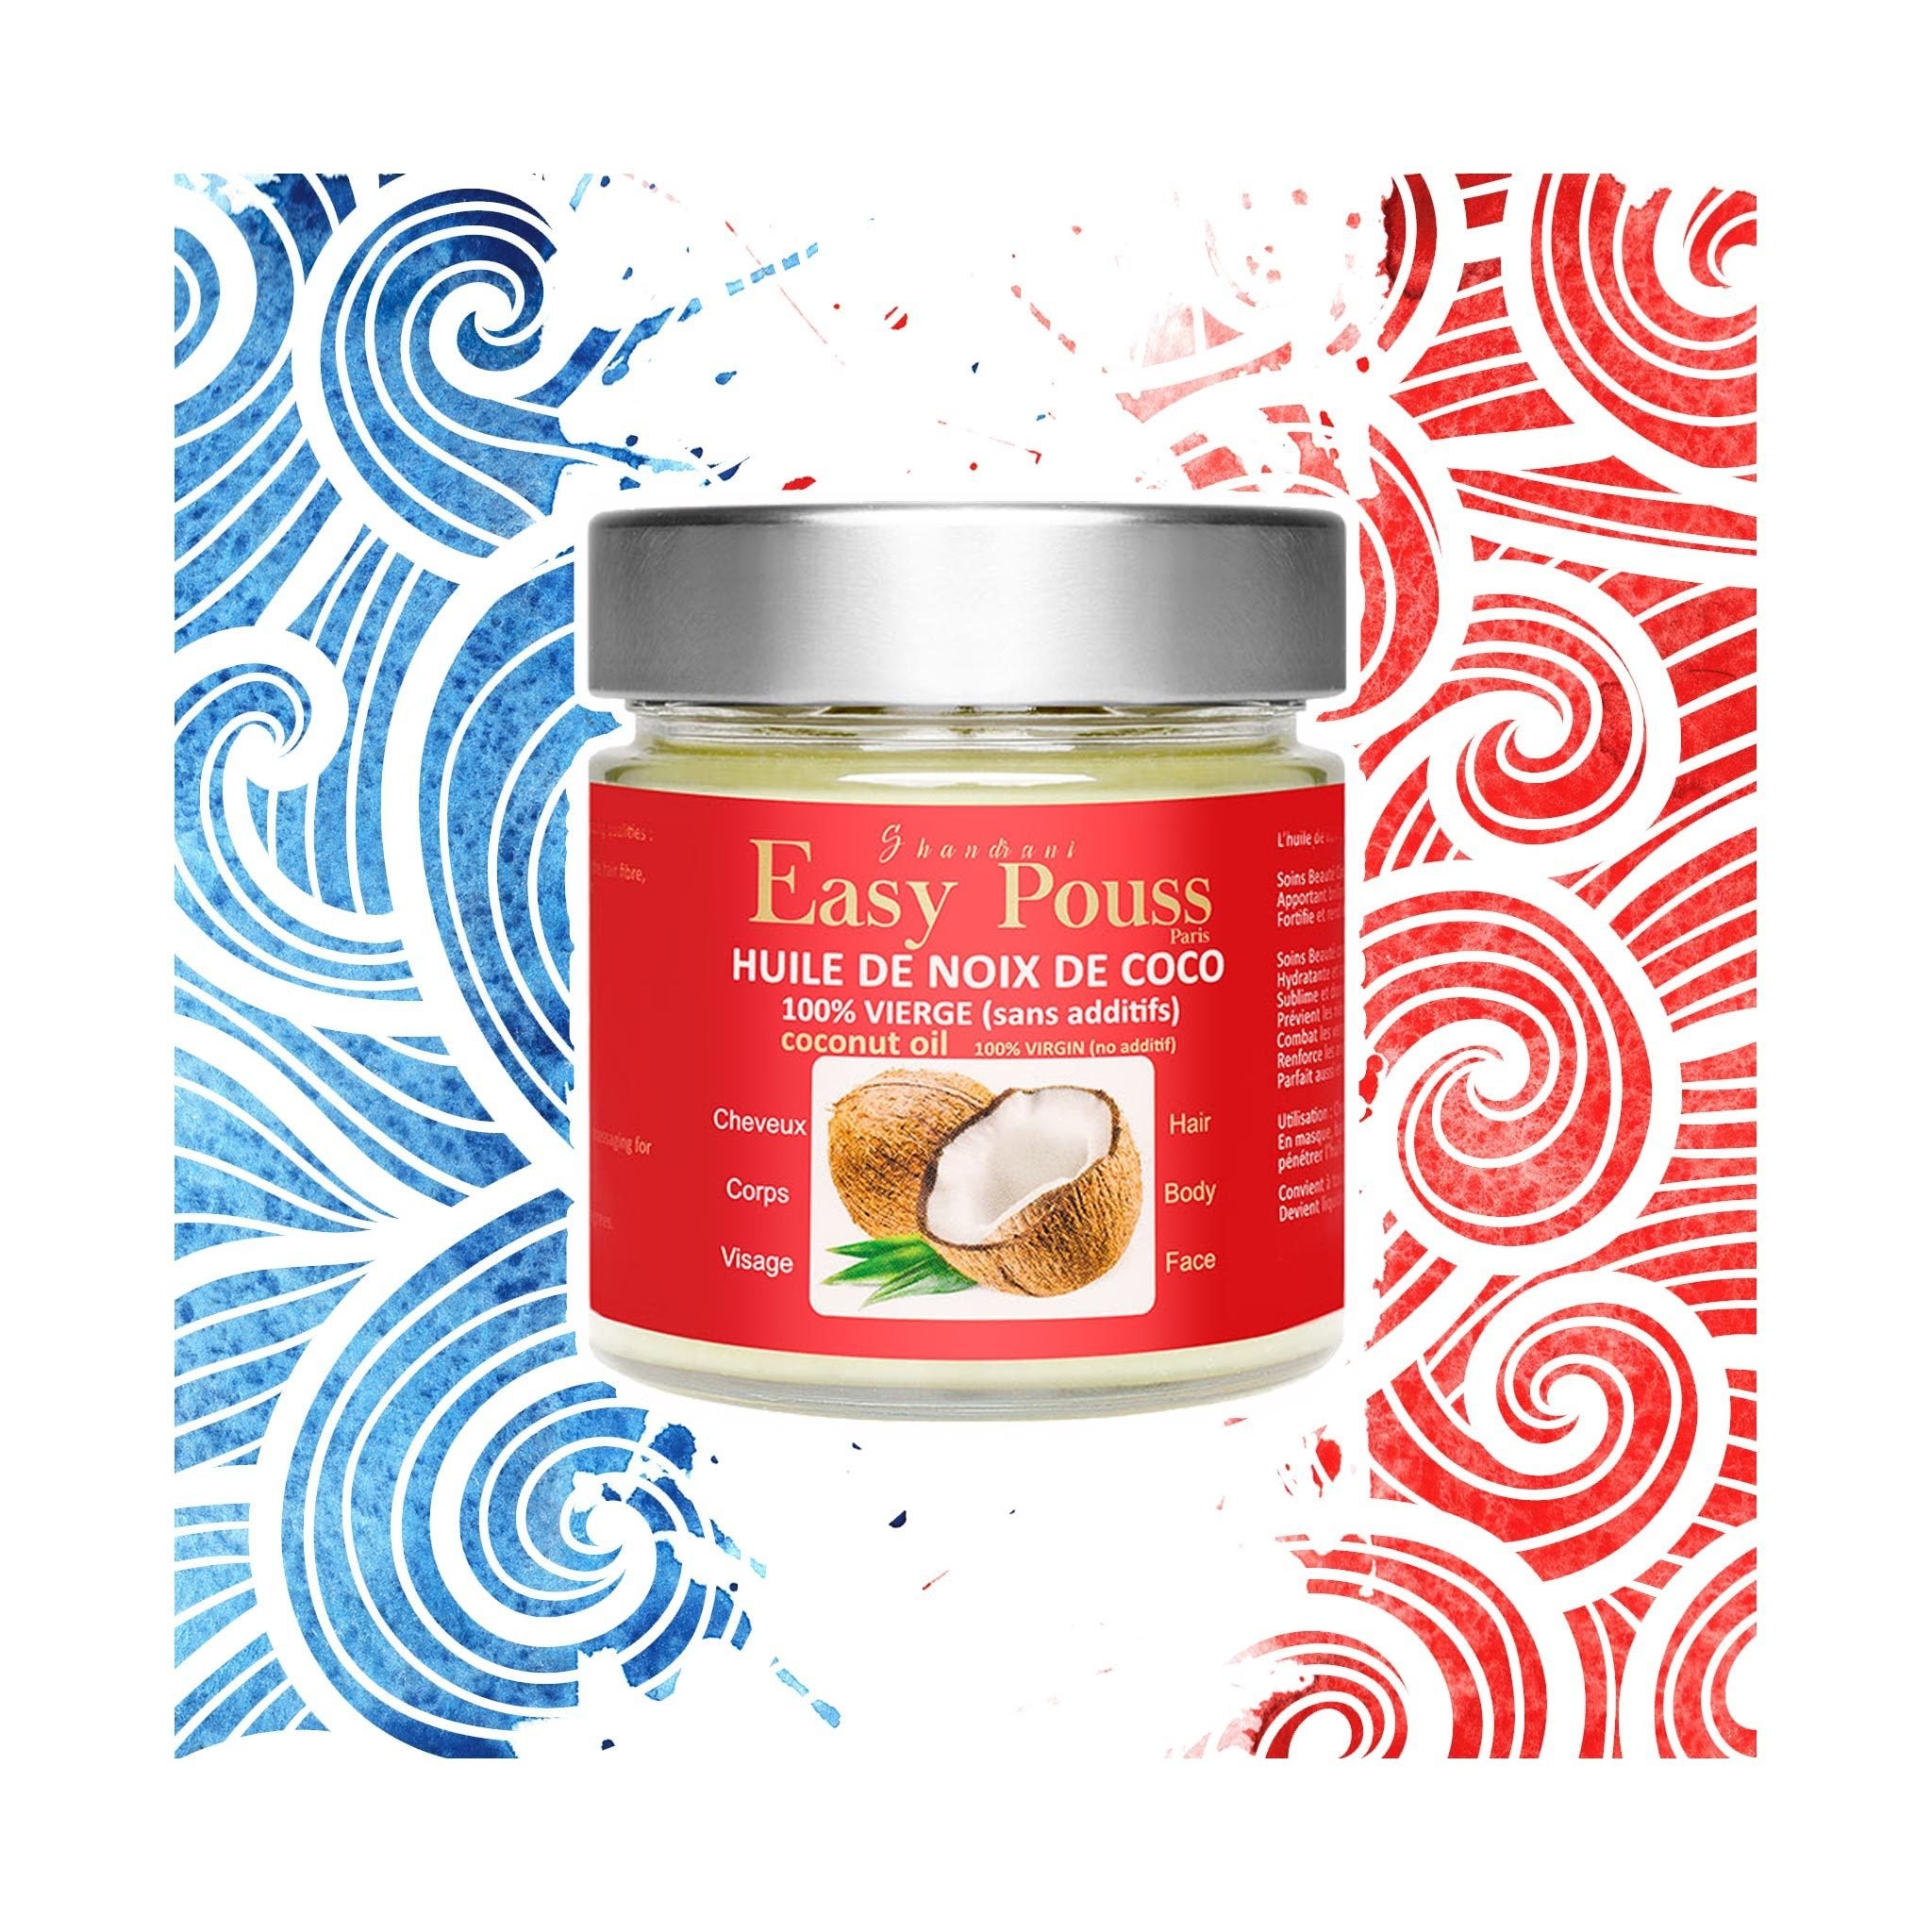 Easy Pouss Paris | Huile de noix de coco naturelle - lockenkopf